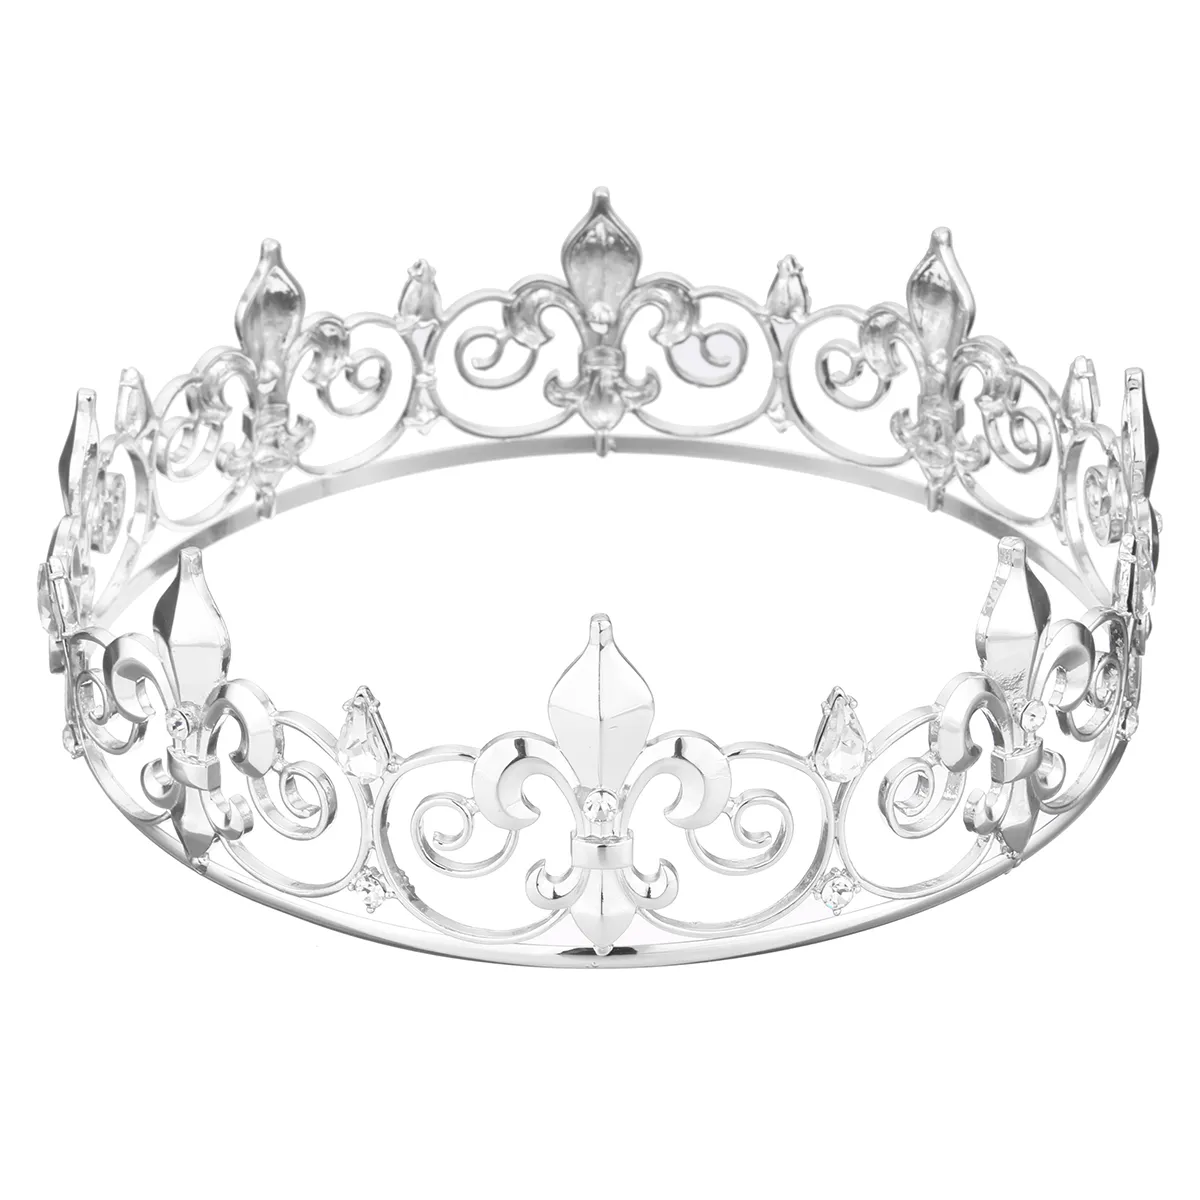 Tiara da sposa in cristallo da uomo corona d'argento dorata spettacolo prom strass velo tiara fascia da sposa gioielli capelli T2001235b